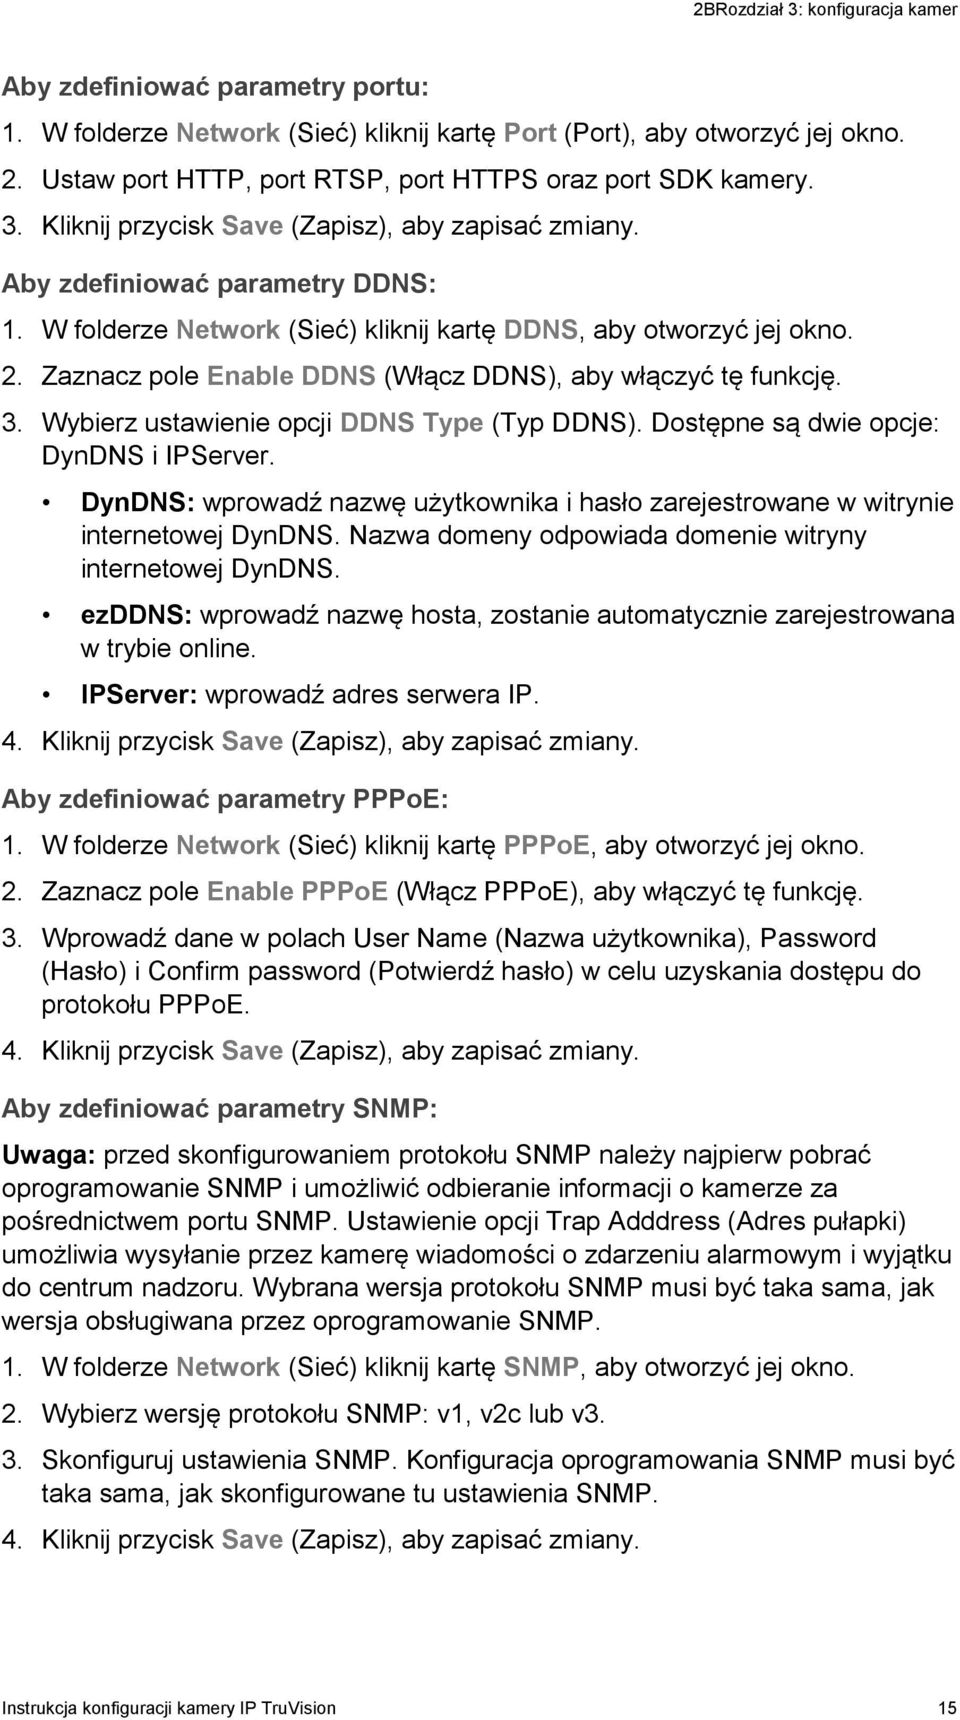 W folderze Network (Sieć) kliknij kartę DDNS, aby otworzyć jej okno. 2. Zaznacz pole Enable DDNS (Włącz DDNS), aby włączyć tę funkcję. 3. Wybierz ustawienie opcji DDNS Type (Typ DDNS).